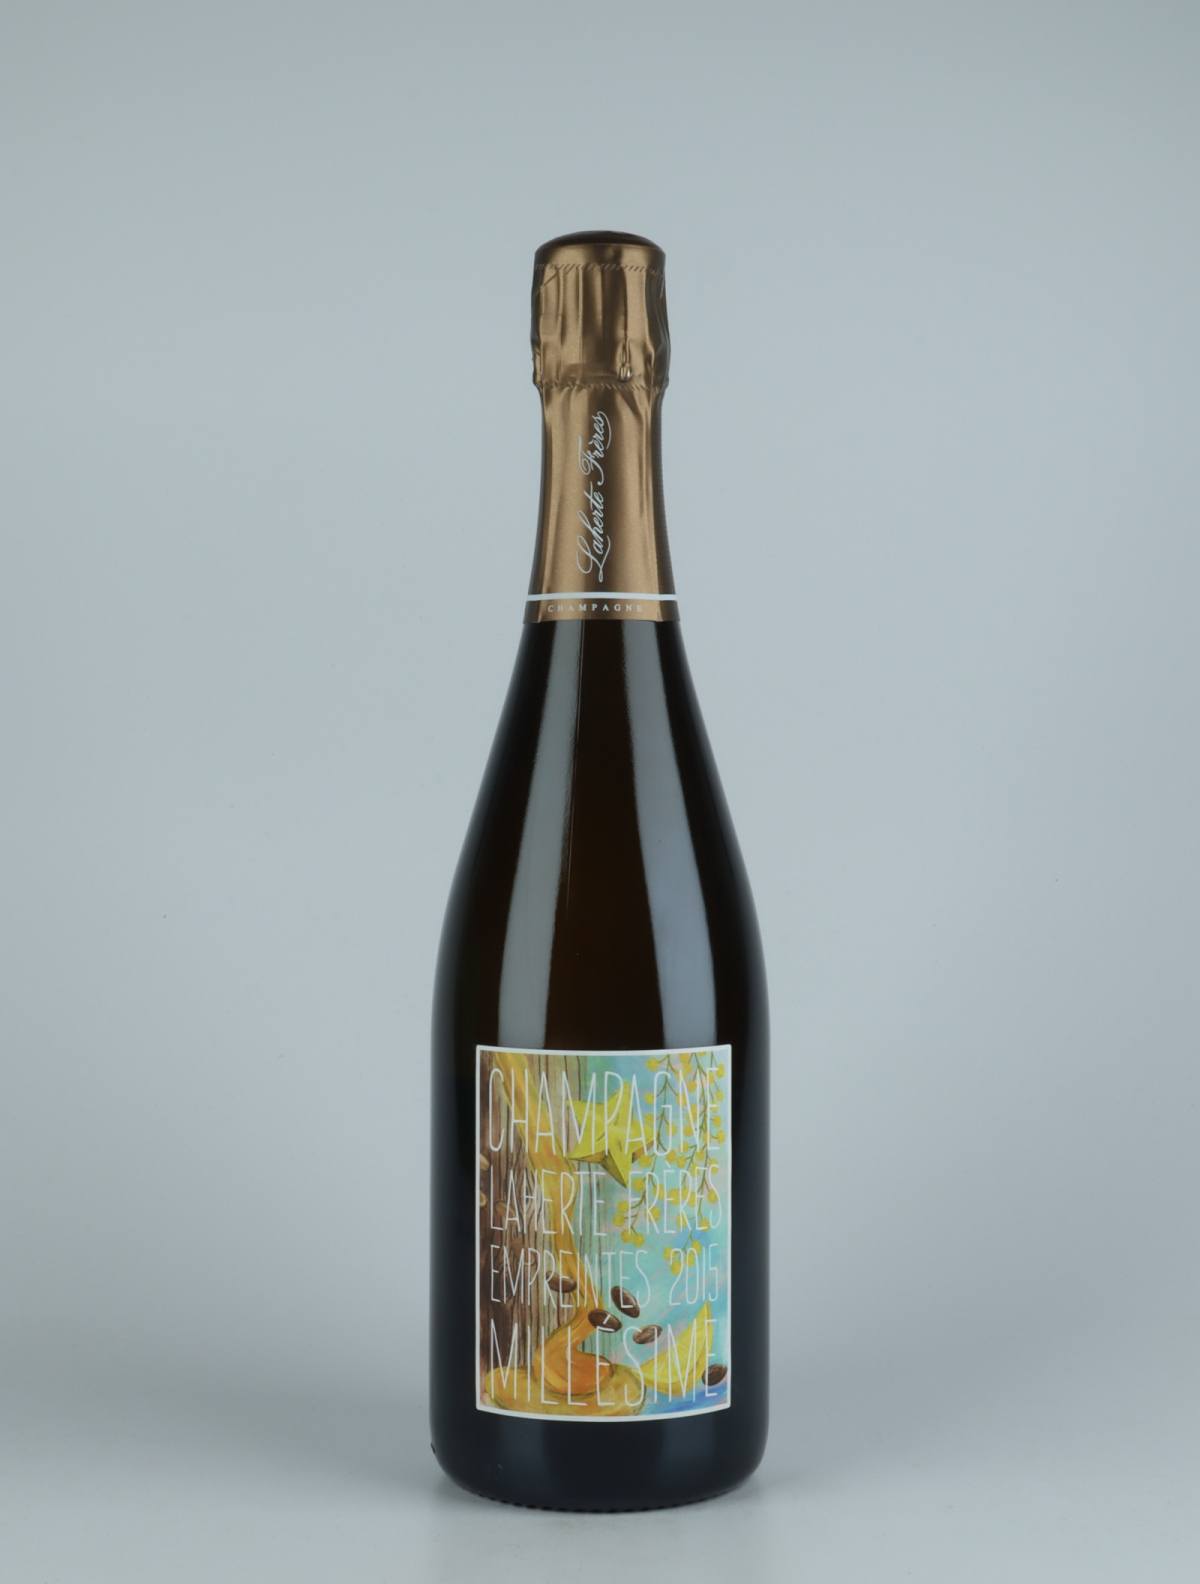 A bottle 2015 Les Empreintes - Extra Brut Sparkling from Laherte Frères, Champagne in France